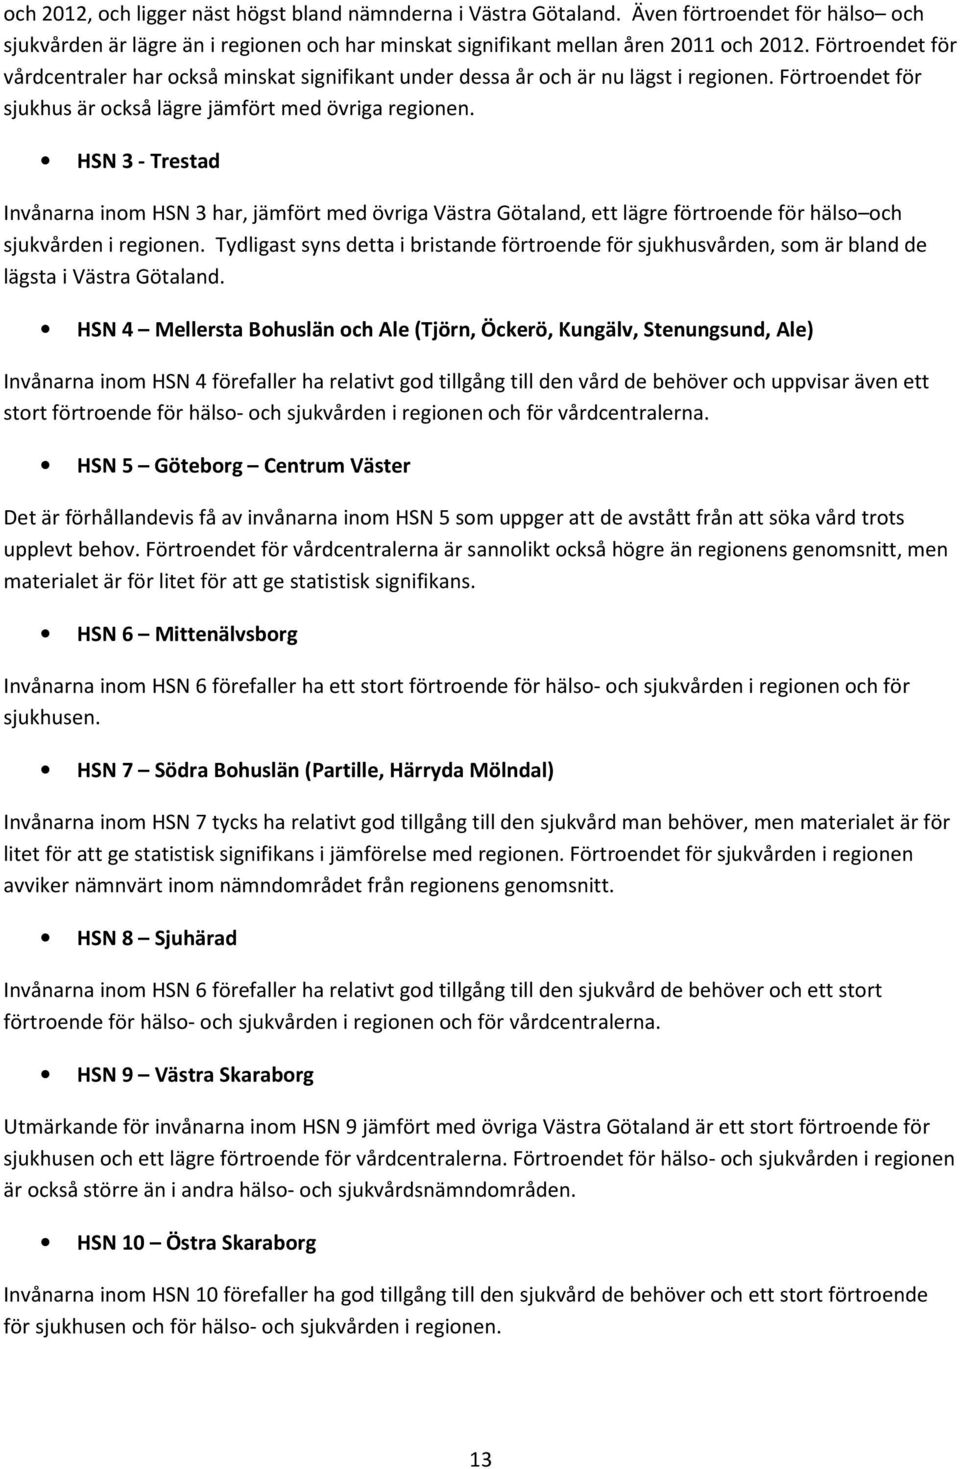 HSN 3 - Trestad Invånarna inom HSN 3 har, jämfört med övriga Västra Götaland, ett lägre förtroende för hälso och sjukvården i regionen.